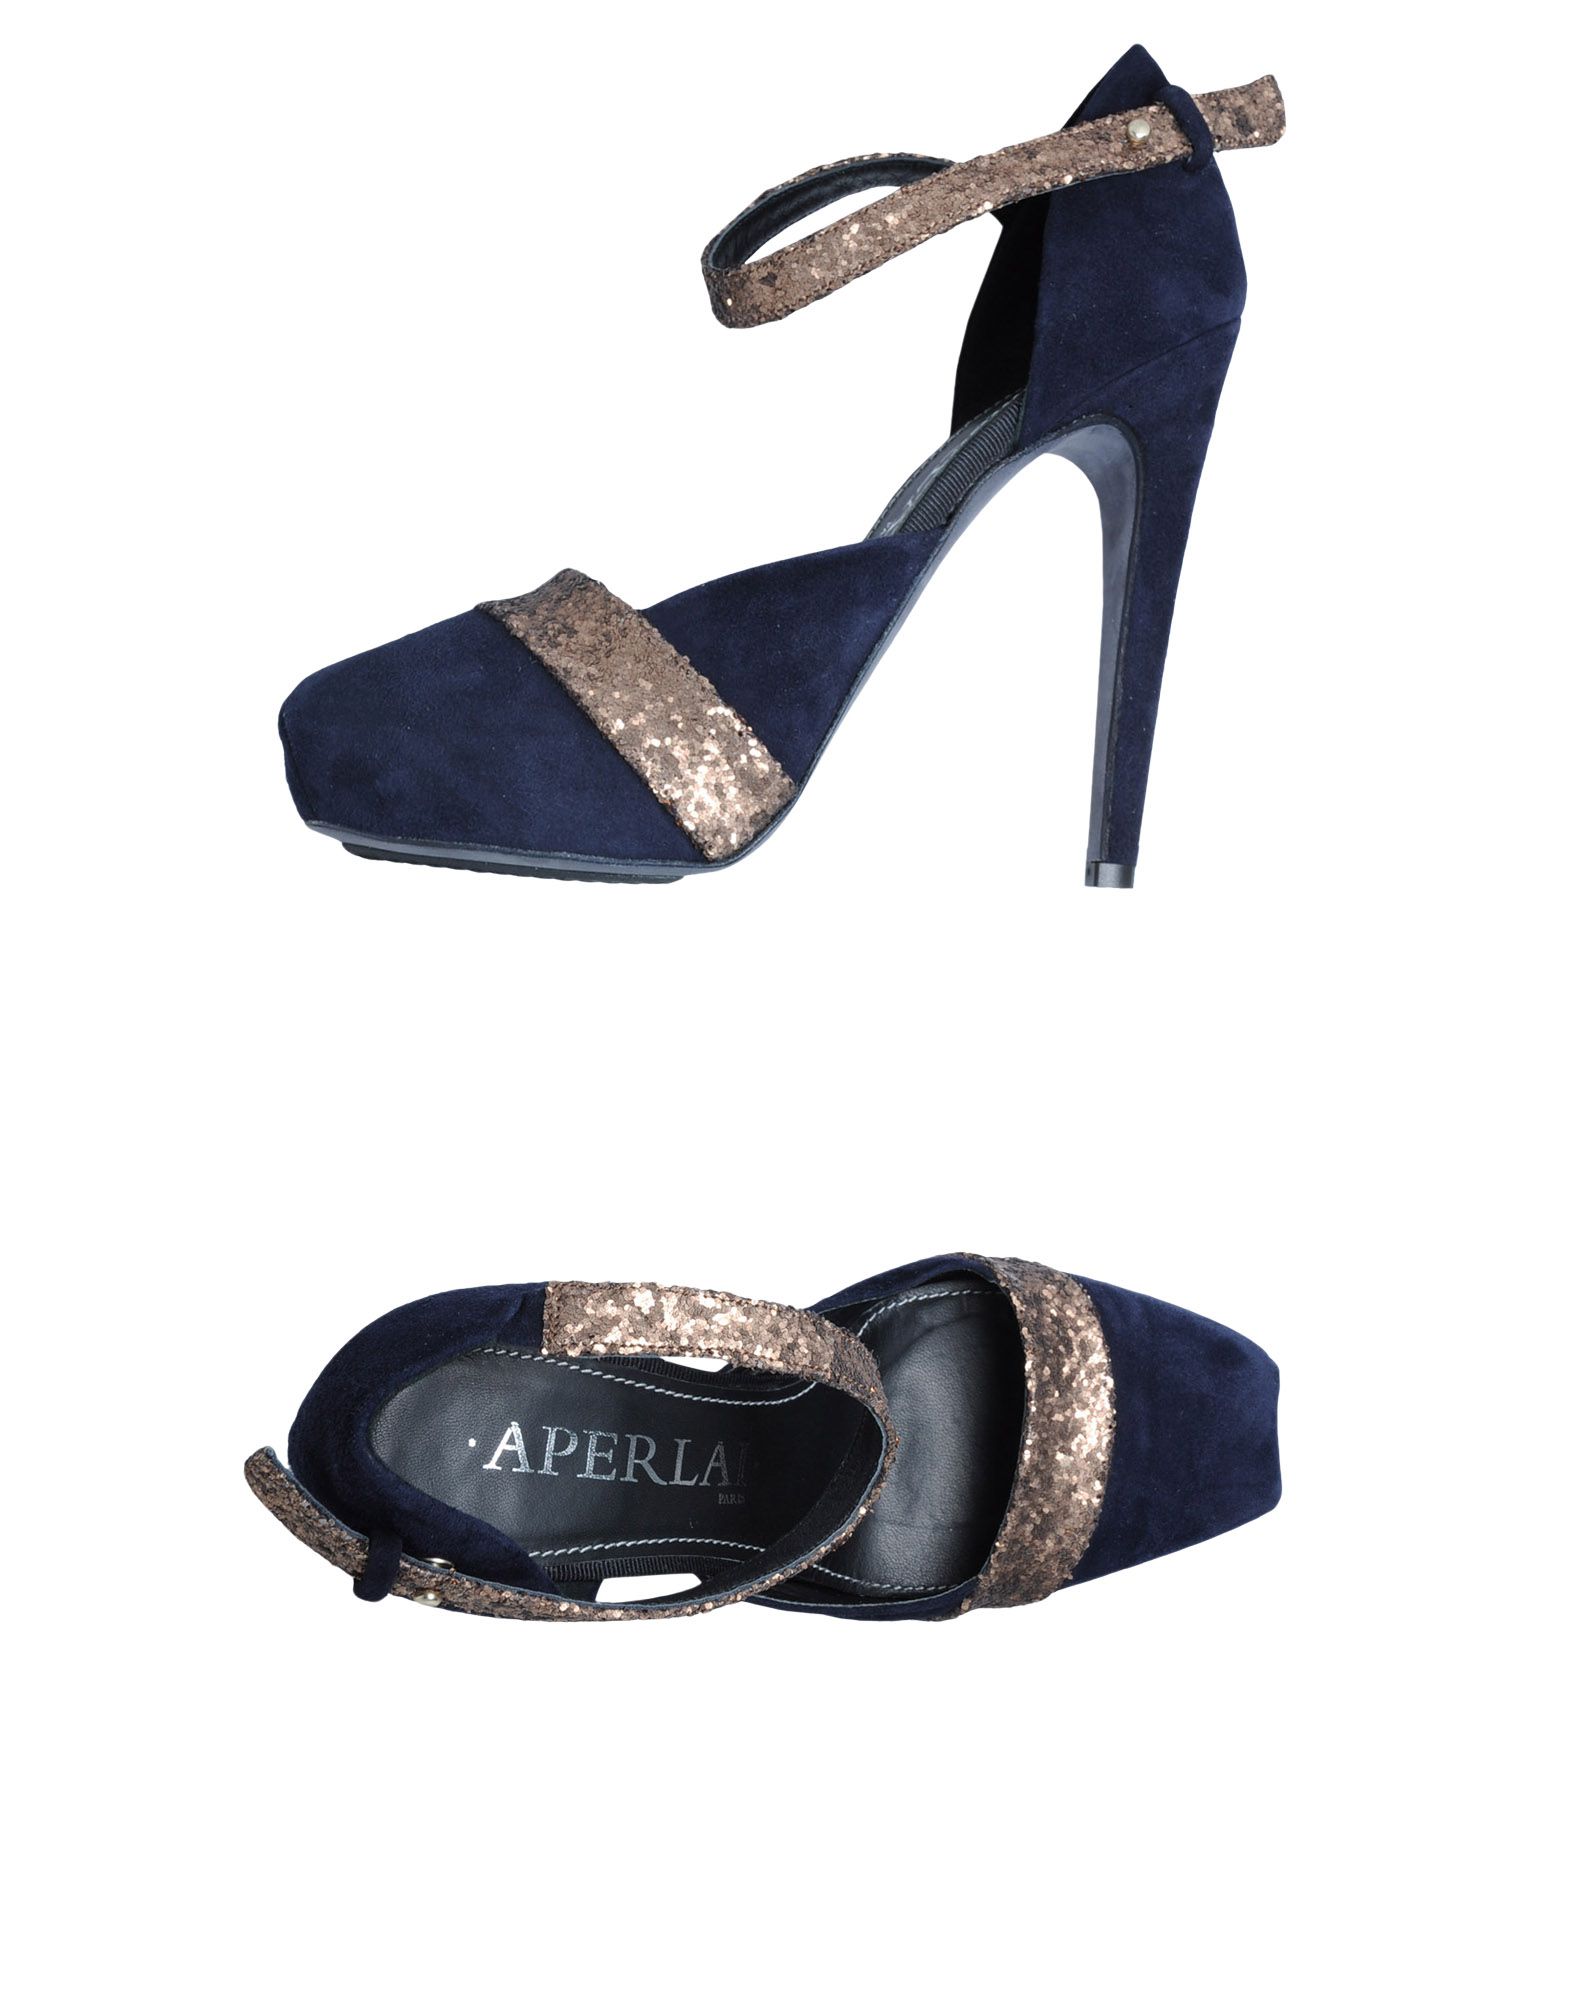 Foto Aperlai Zapatos De SalóN Plataforma Mujer Azul oscuro